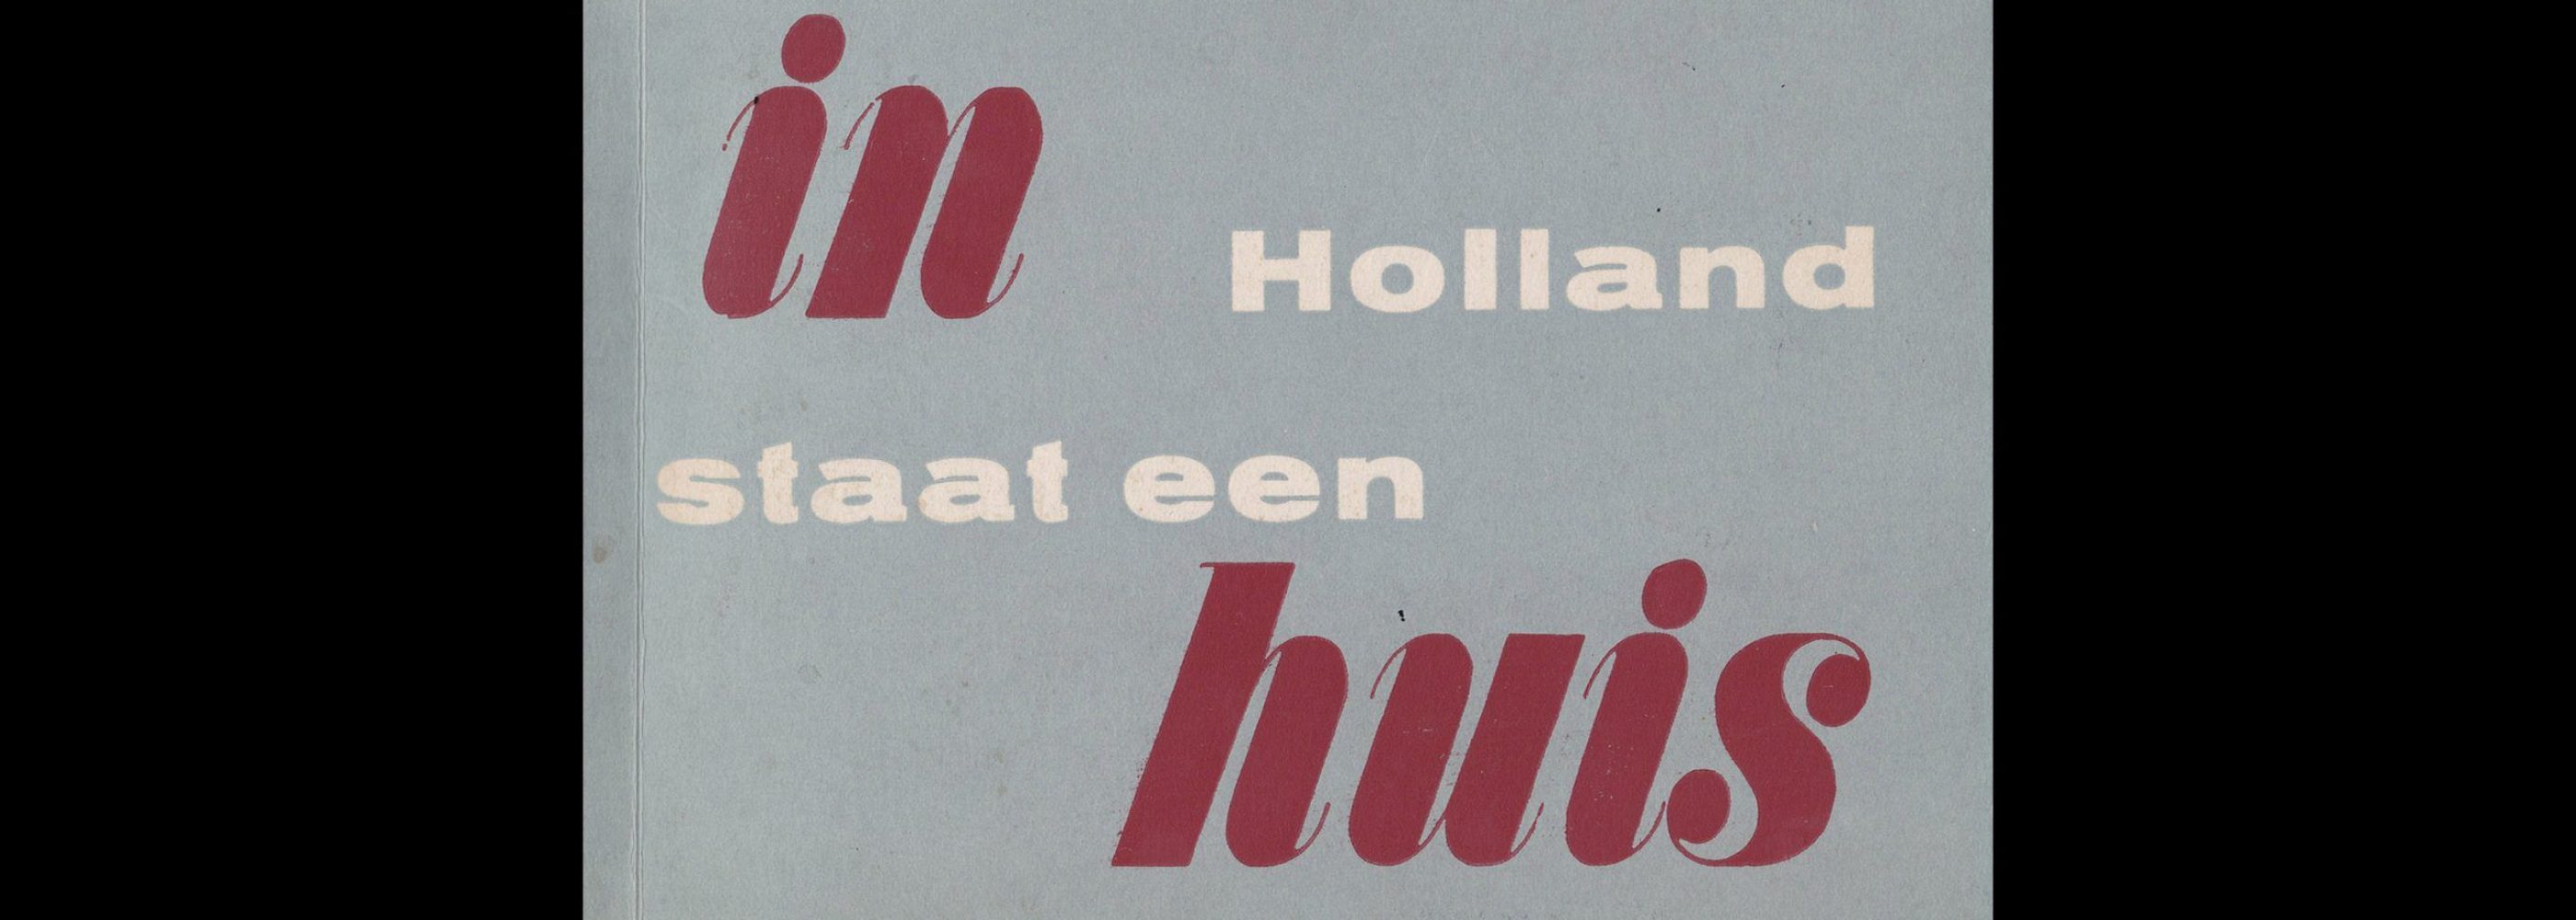 In Holland staat een huis, Stedelijk Museum Amsterdam, 1941